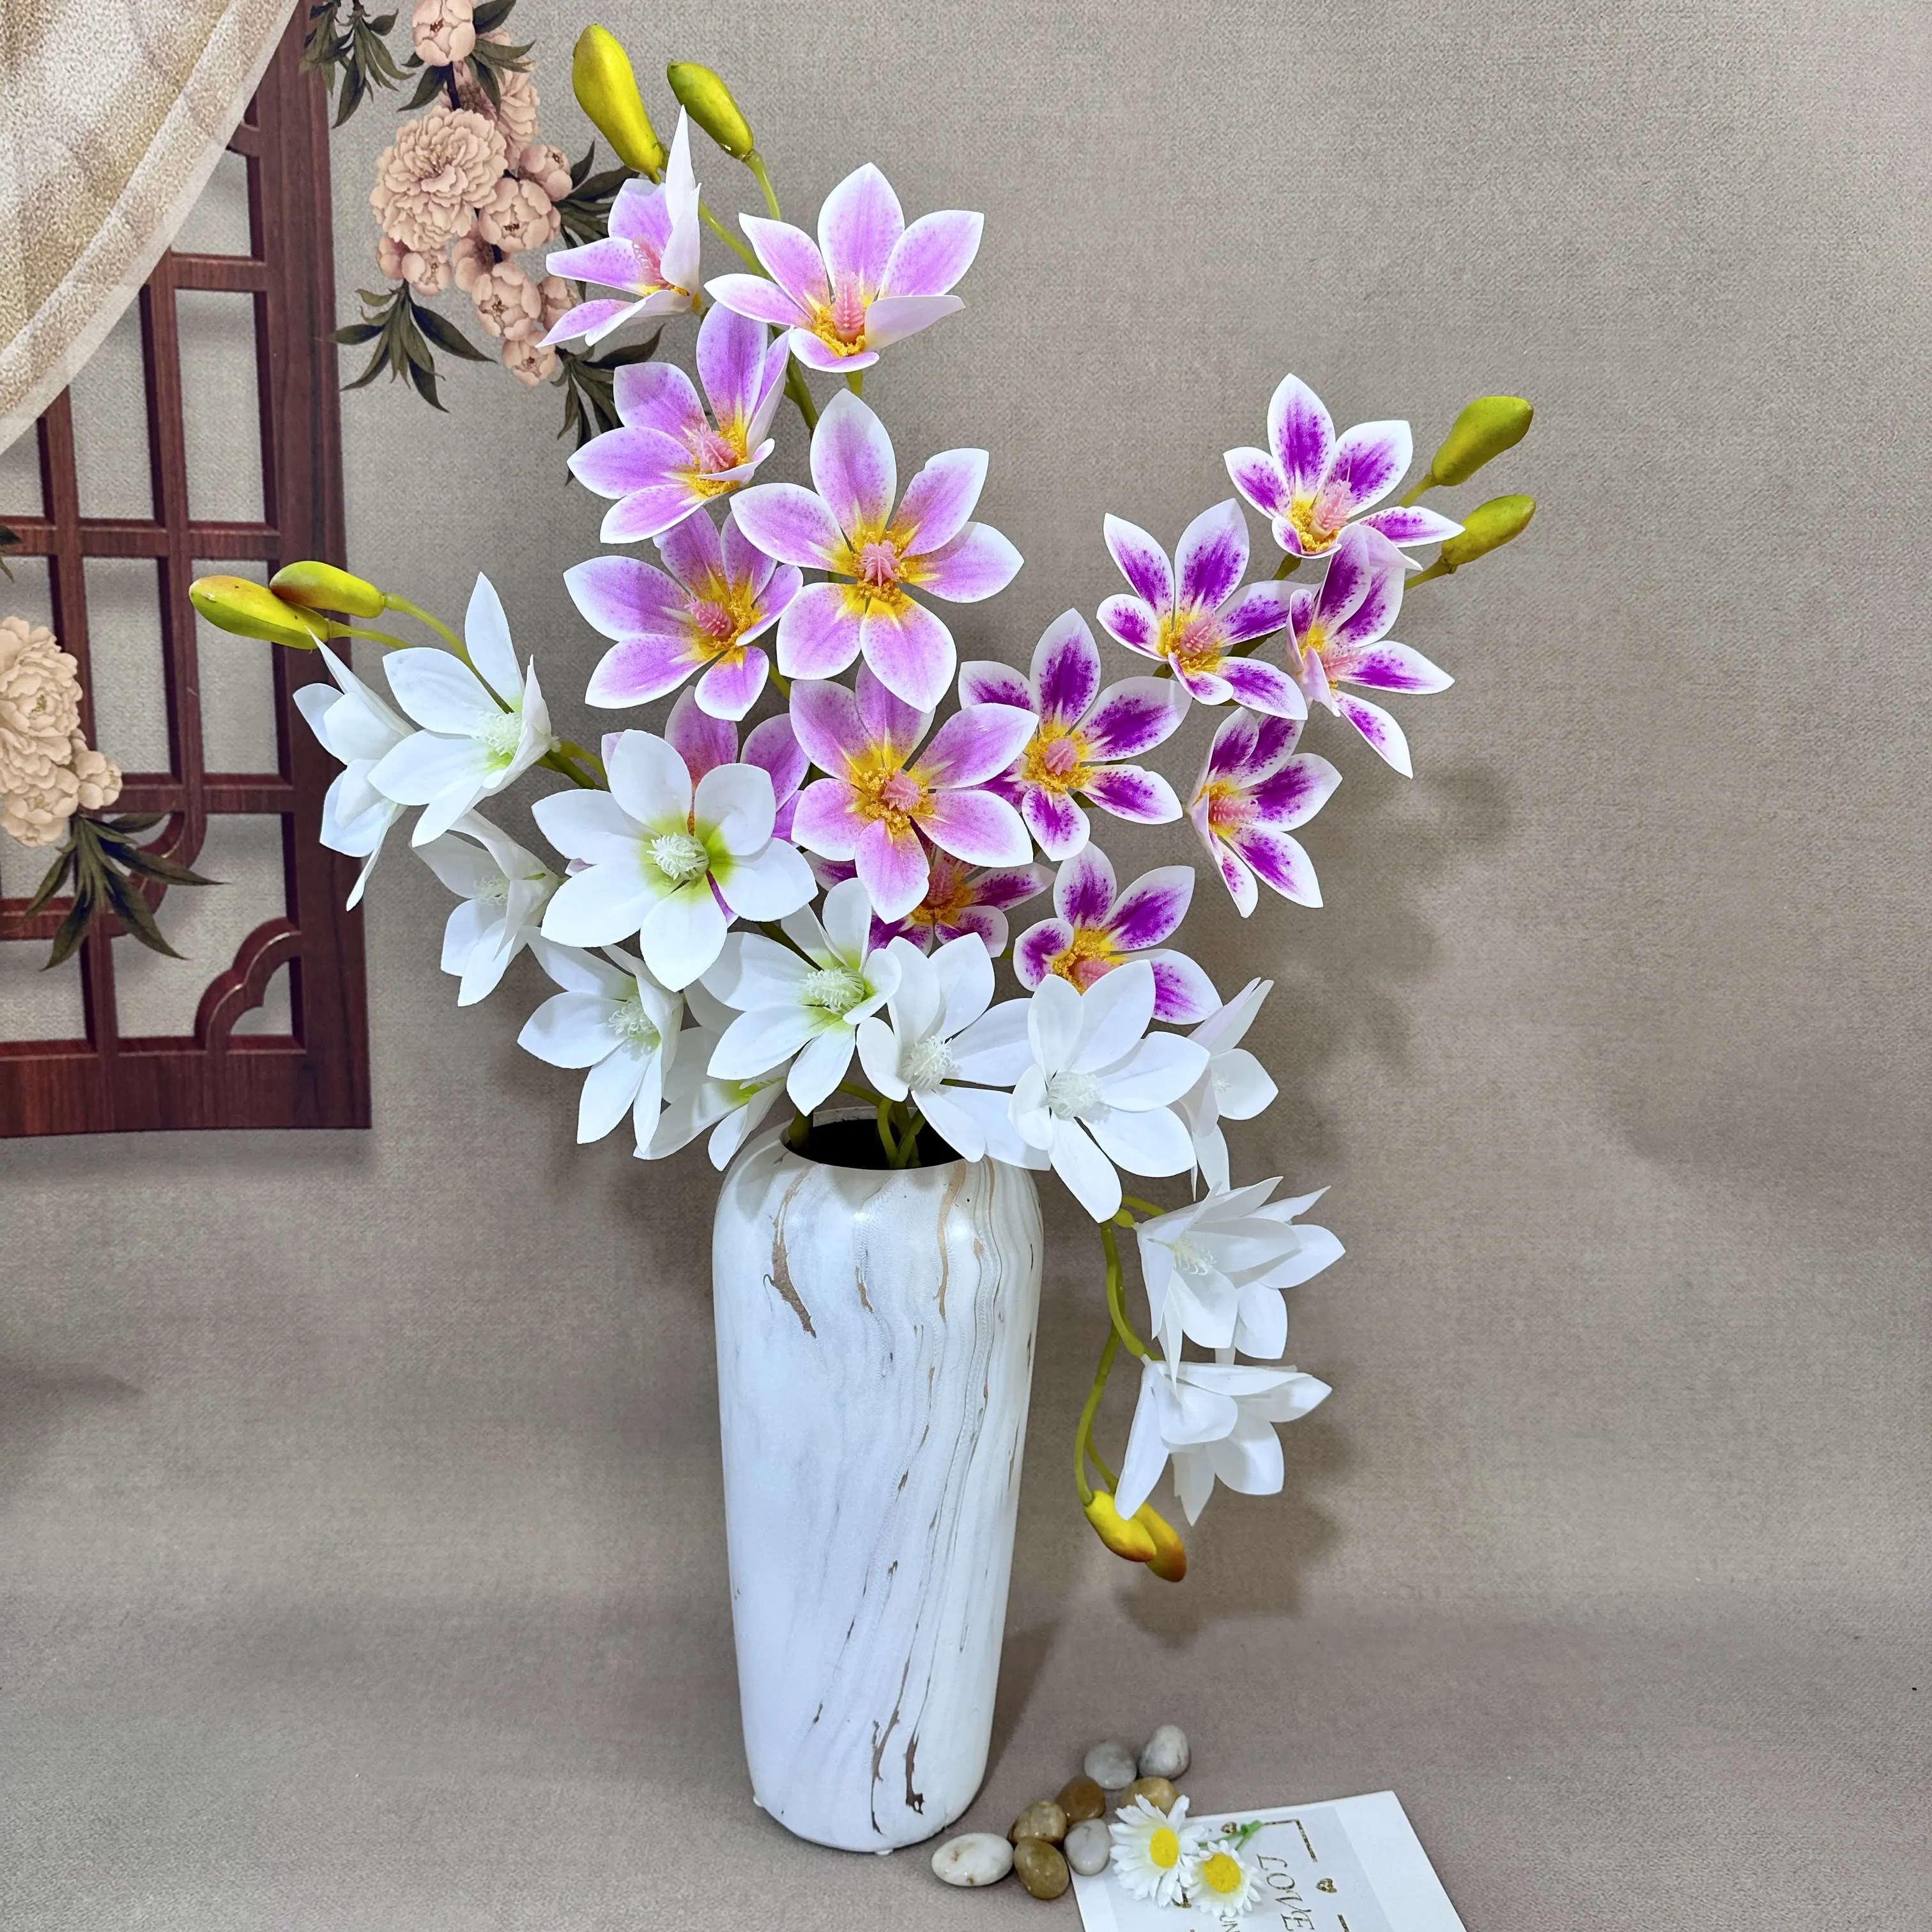 Yulan magnolia fiori artificiali Multicolor di alta qualità fabbrica moderna diretta all'ingrosso festa di nozze giardino decorazione per la casa